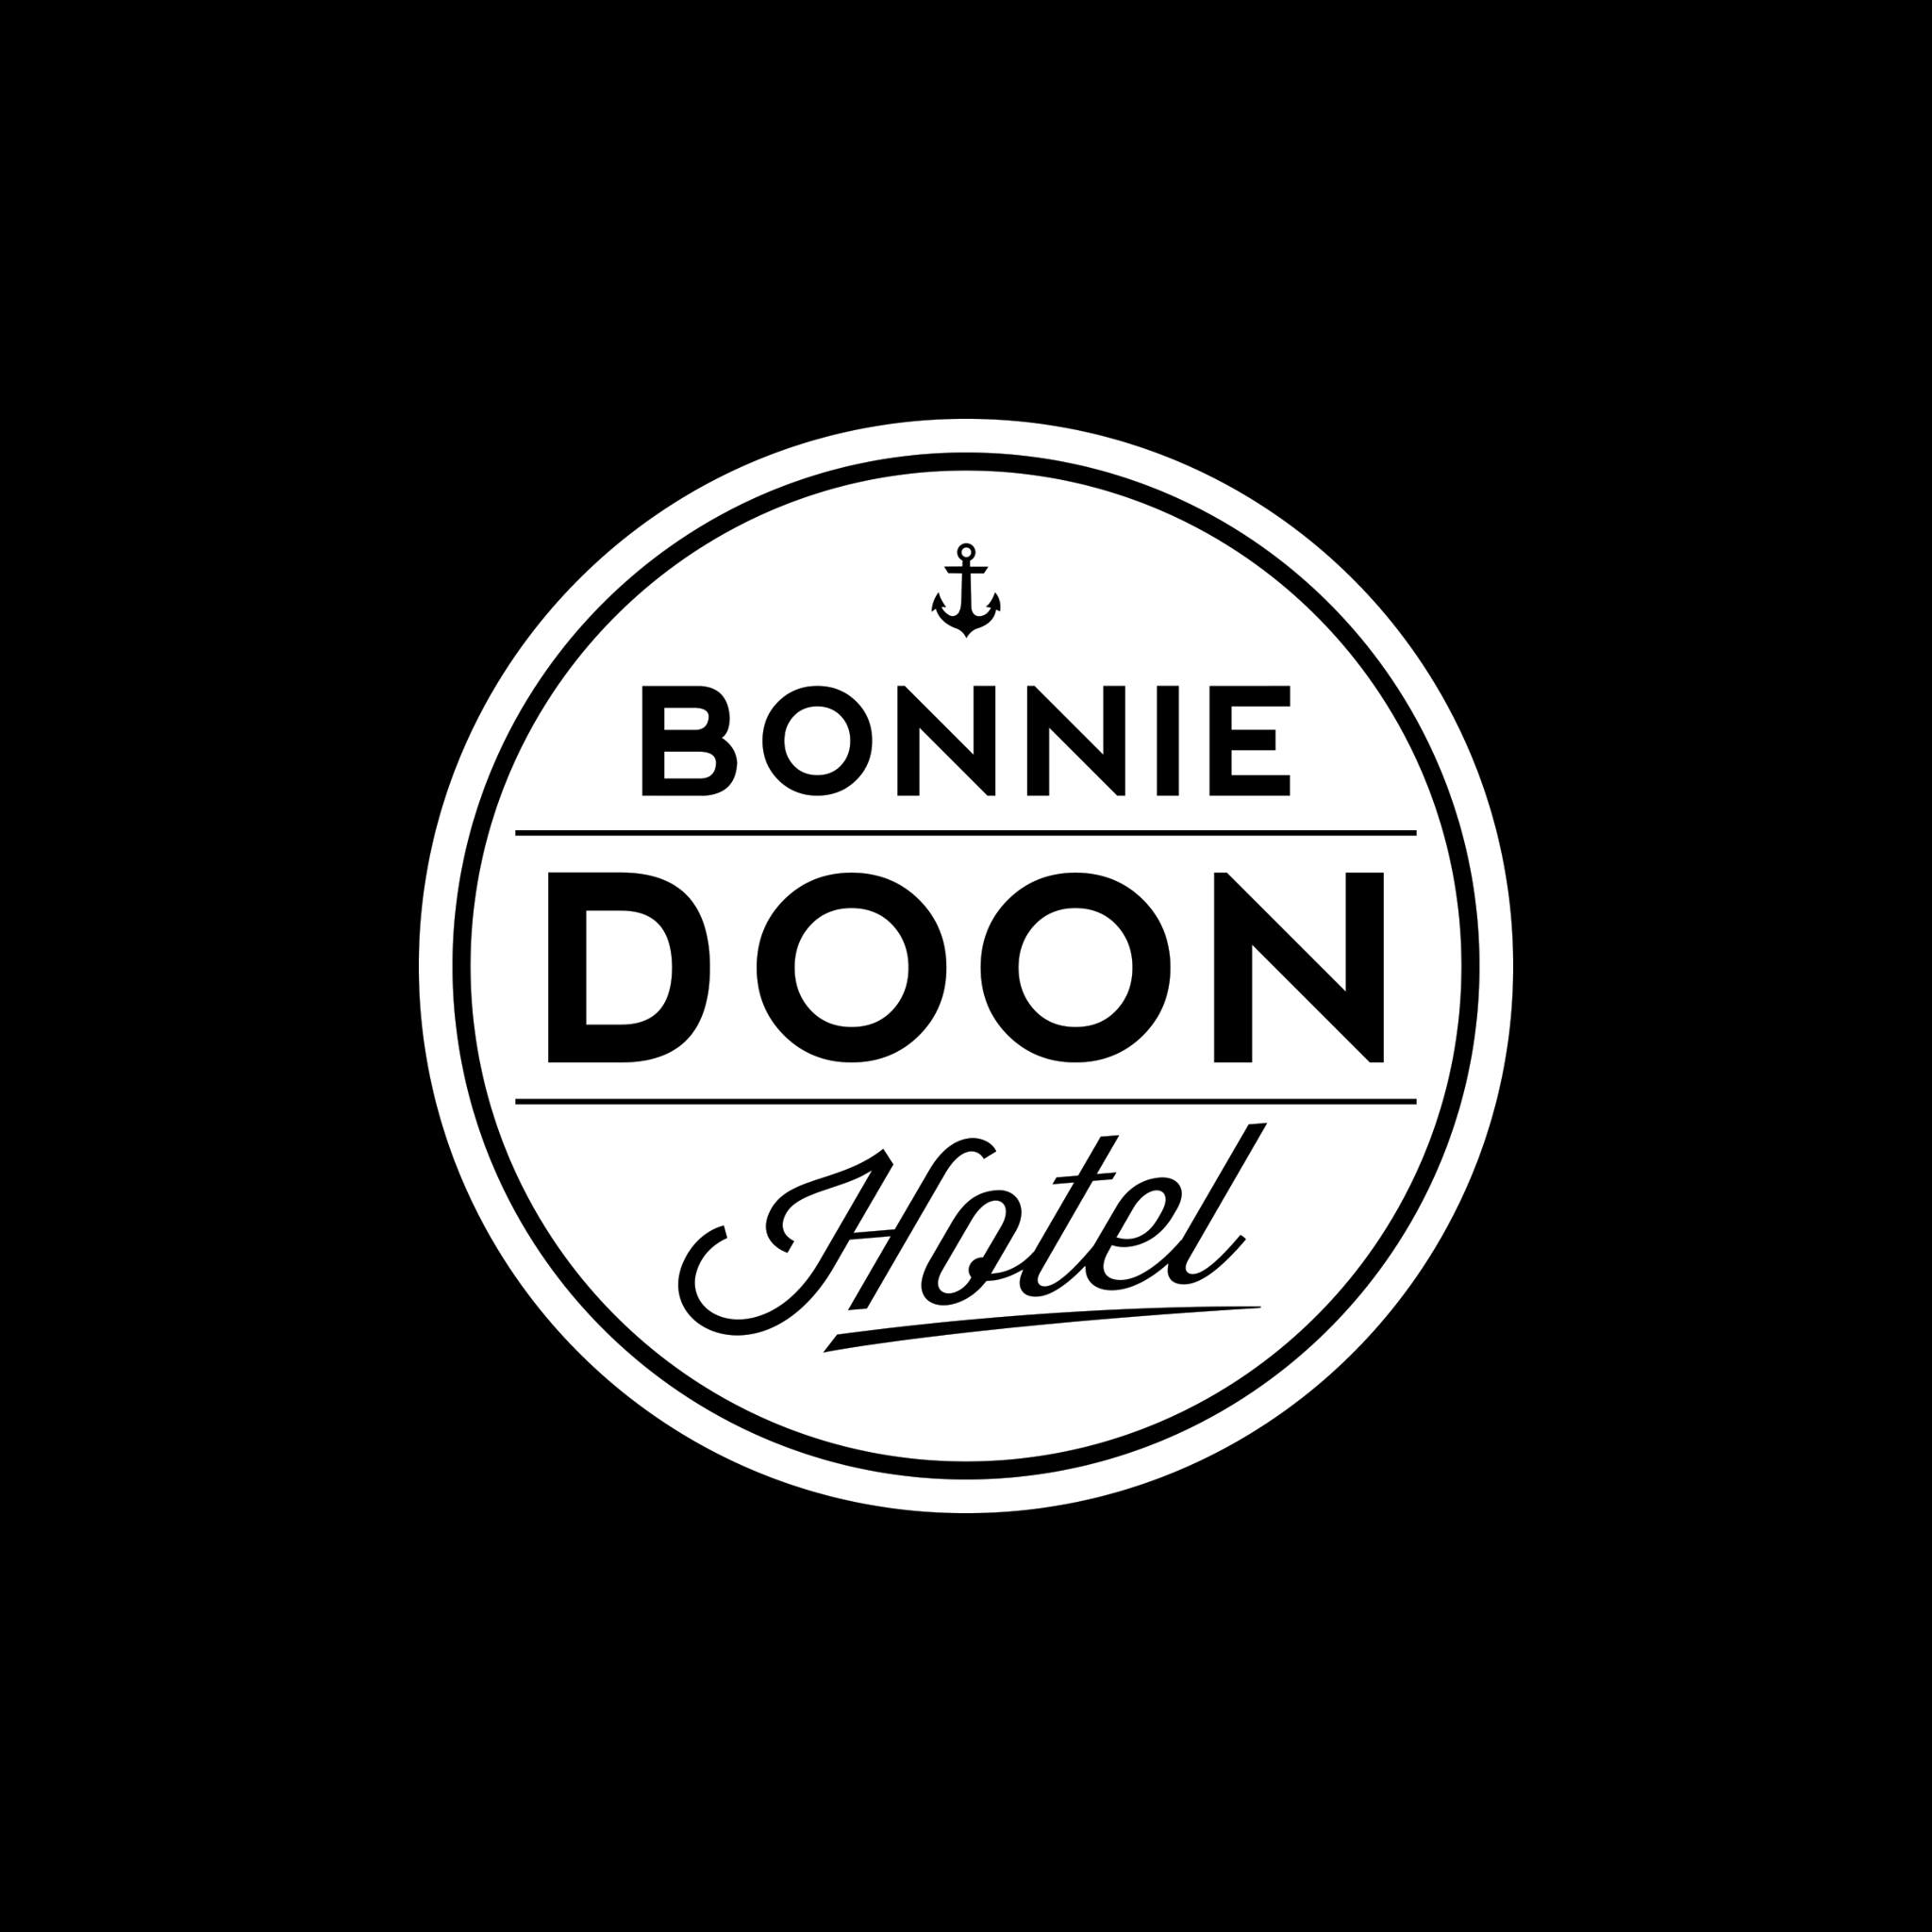 Bonnie doon hotel